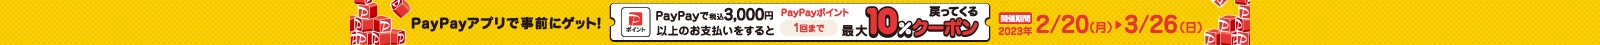 PayPay10%クーポン